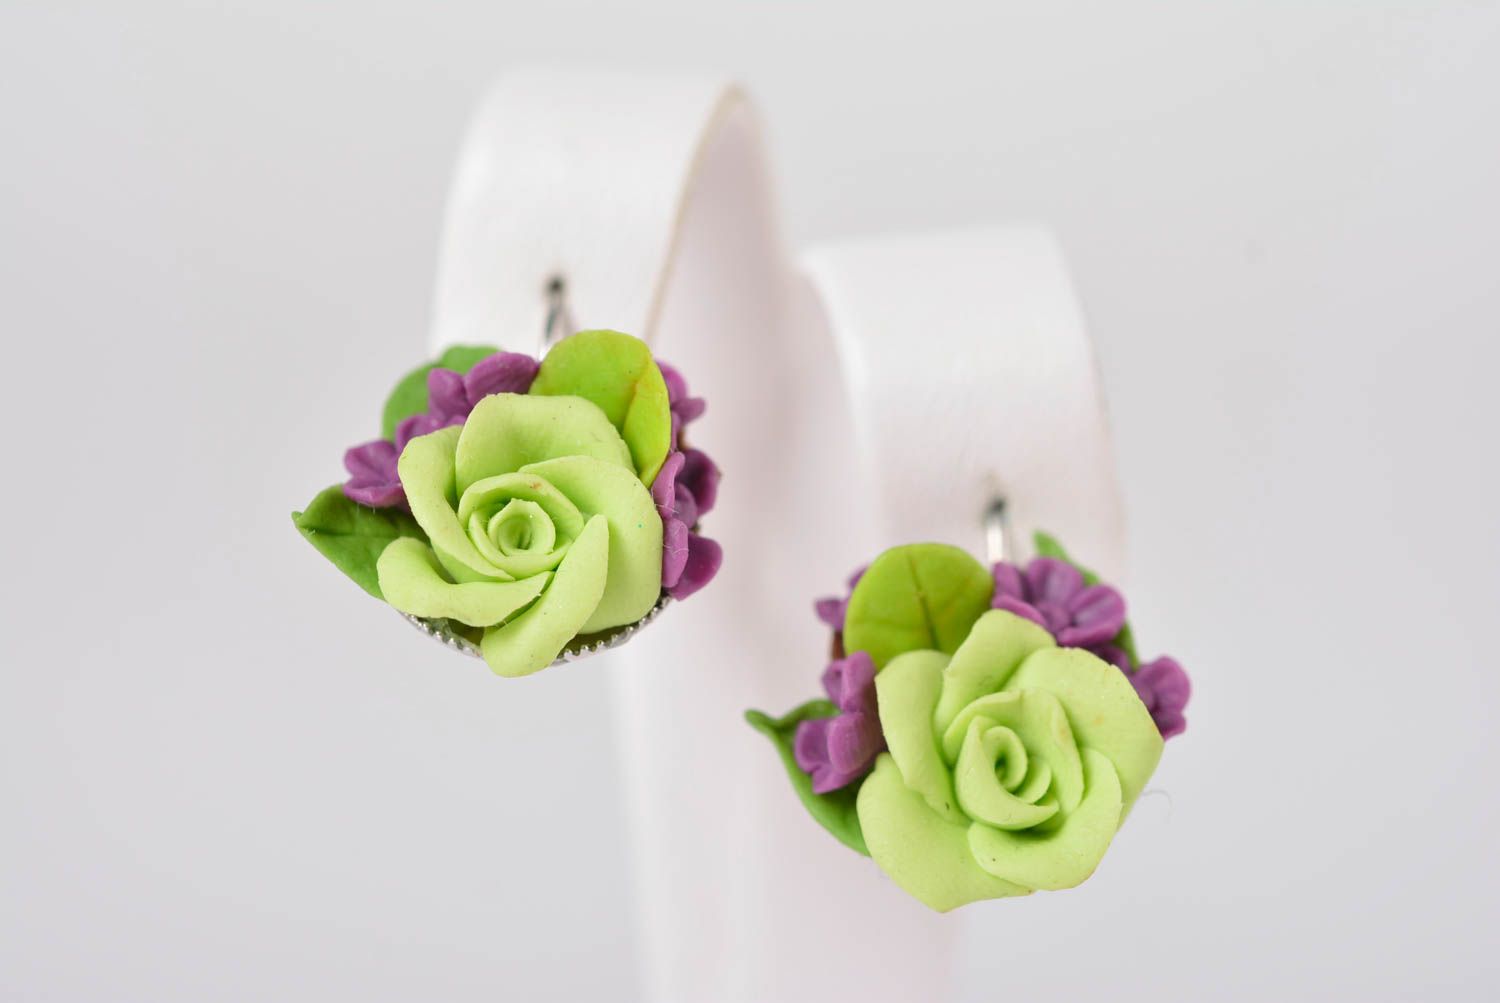 Handmade bijouterie porcelain earrings summer flower earrings stylish jewelry photo 1